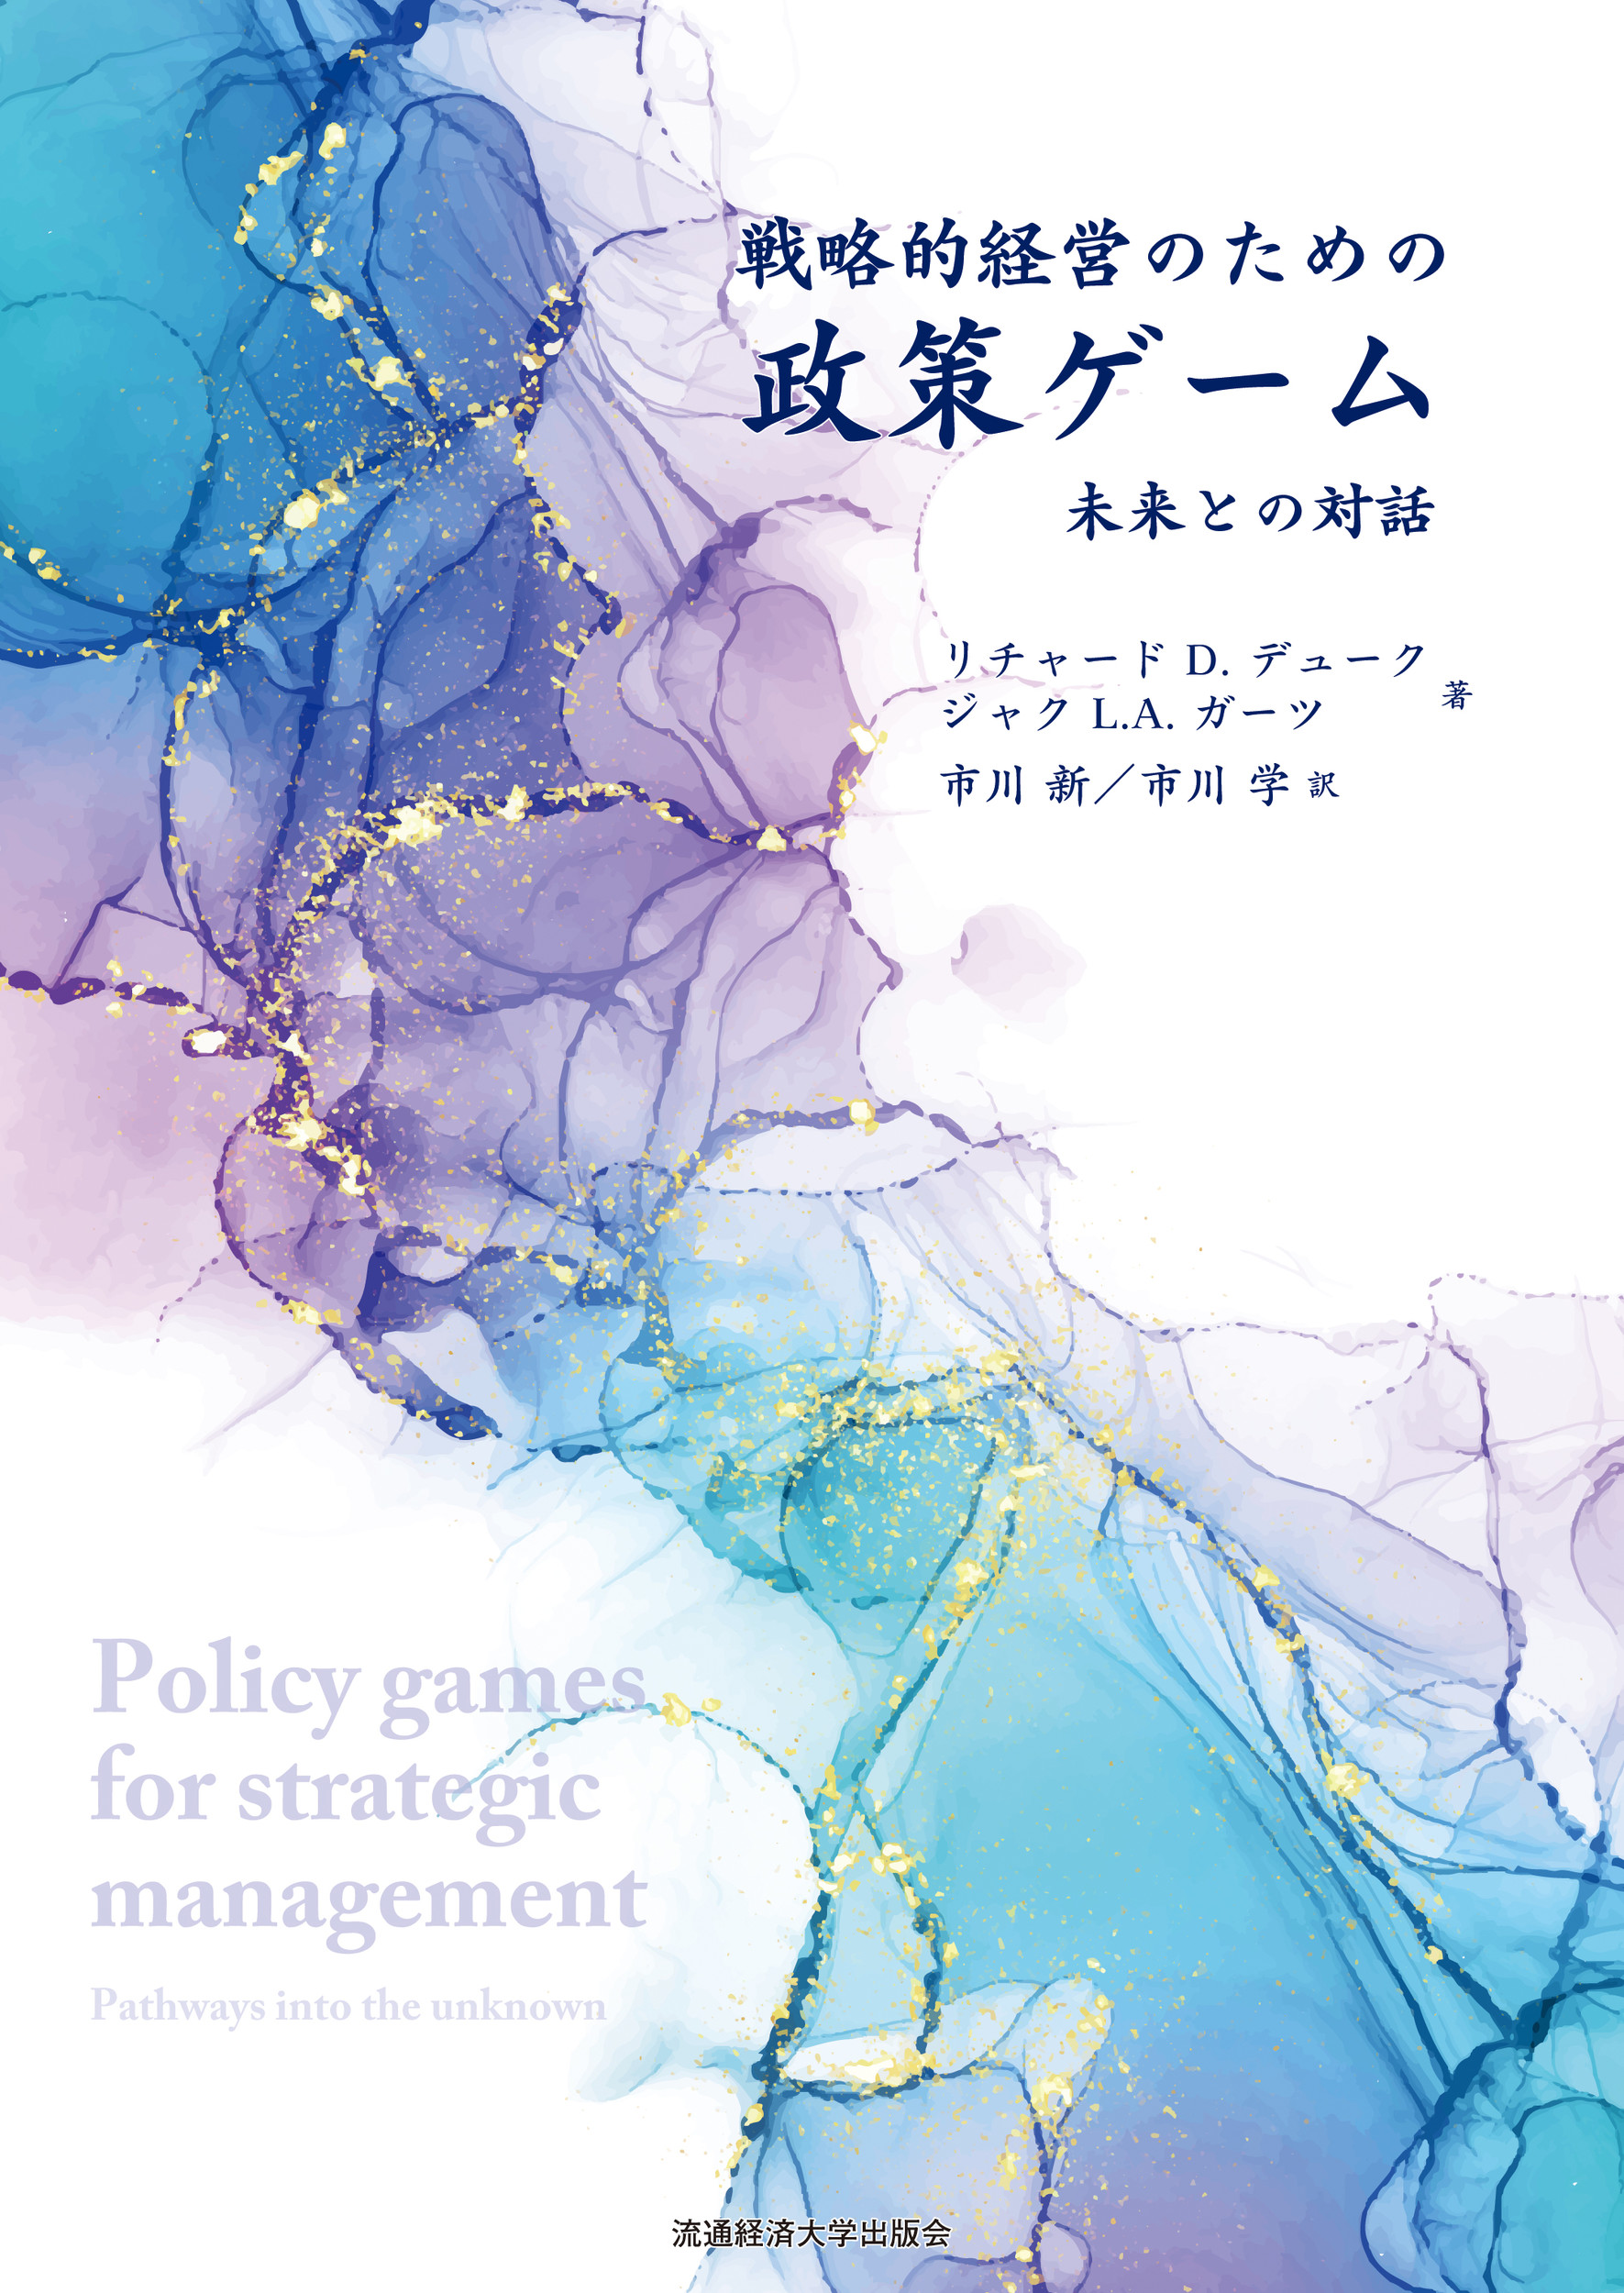 戦略的経営のための政策ゲームの商品画像